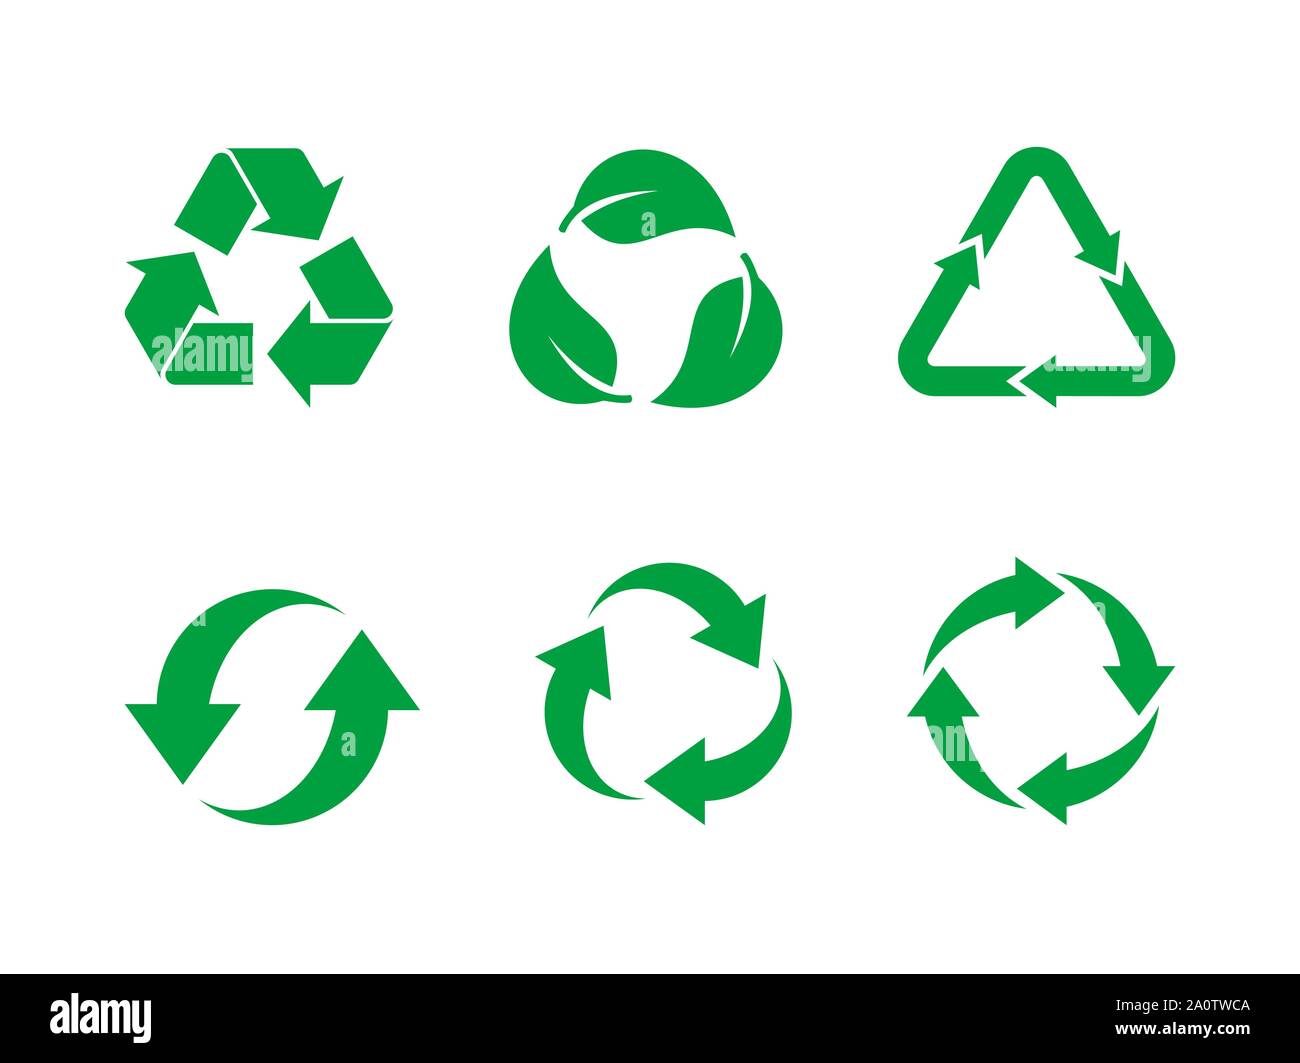 Símbolos De Reciclaje: Significado Y Aplicación En Packaging Packhelp |  sptc.edu.bd